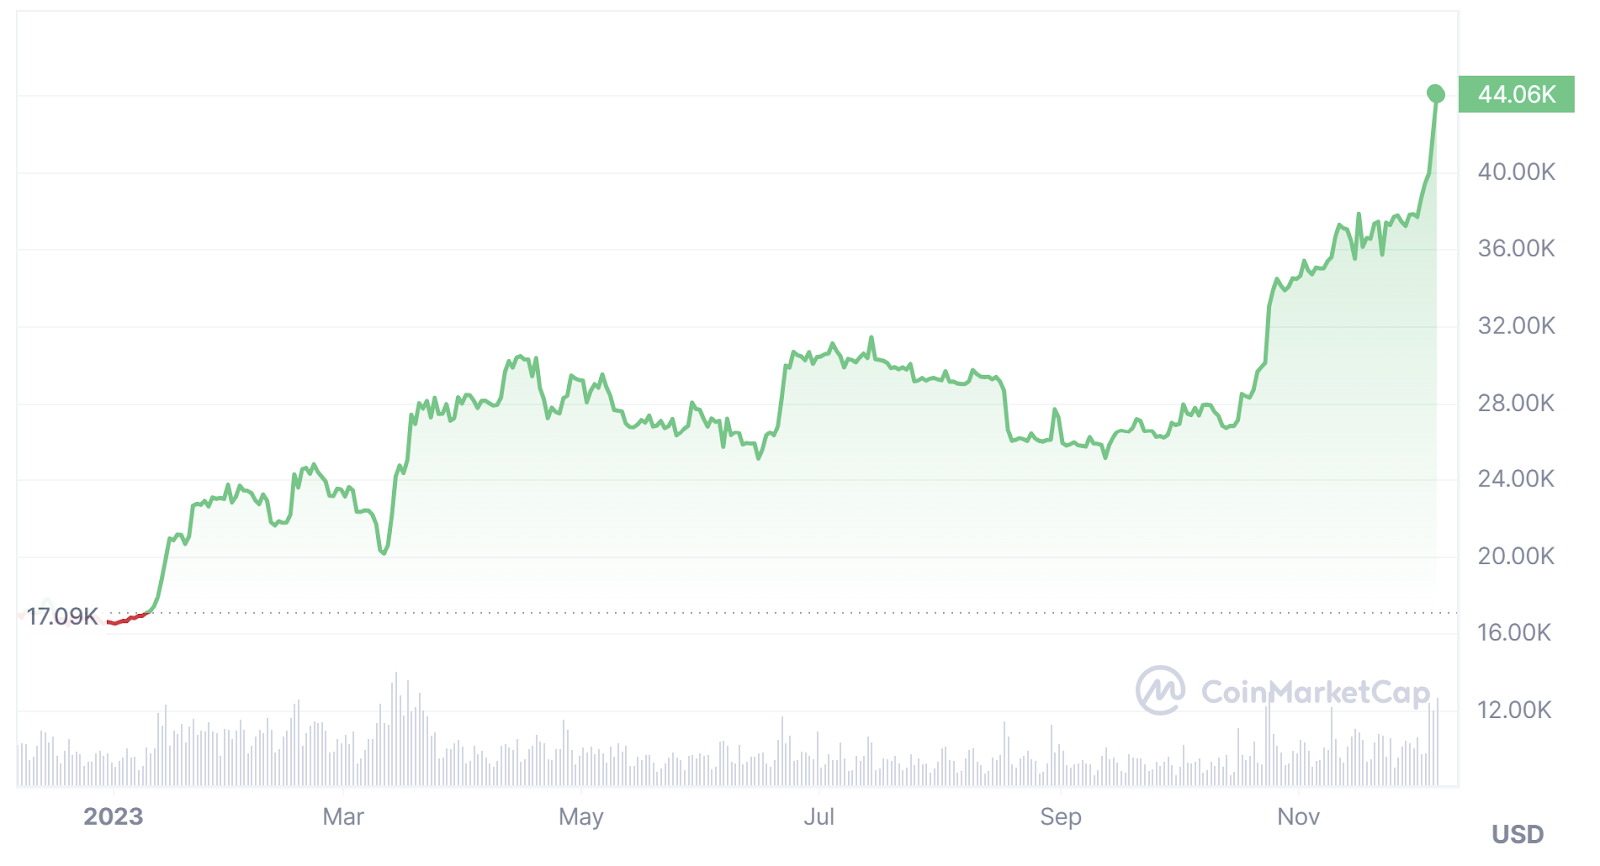 Bitcoin-USD 12 Month Price Chart Via CoinMarketCap